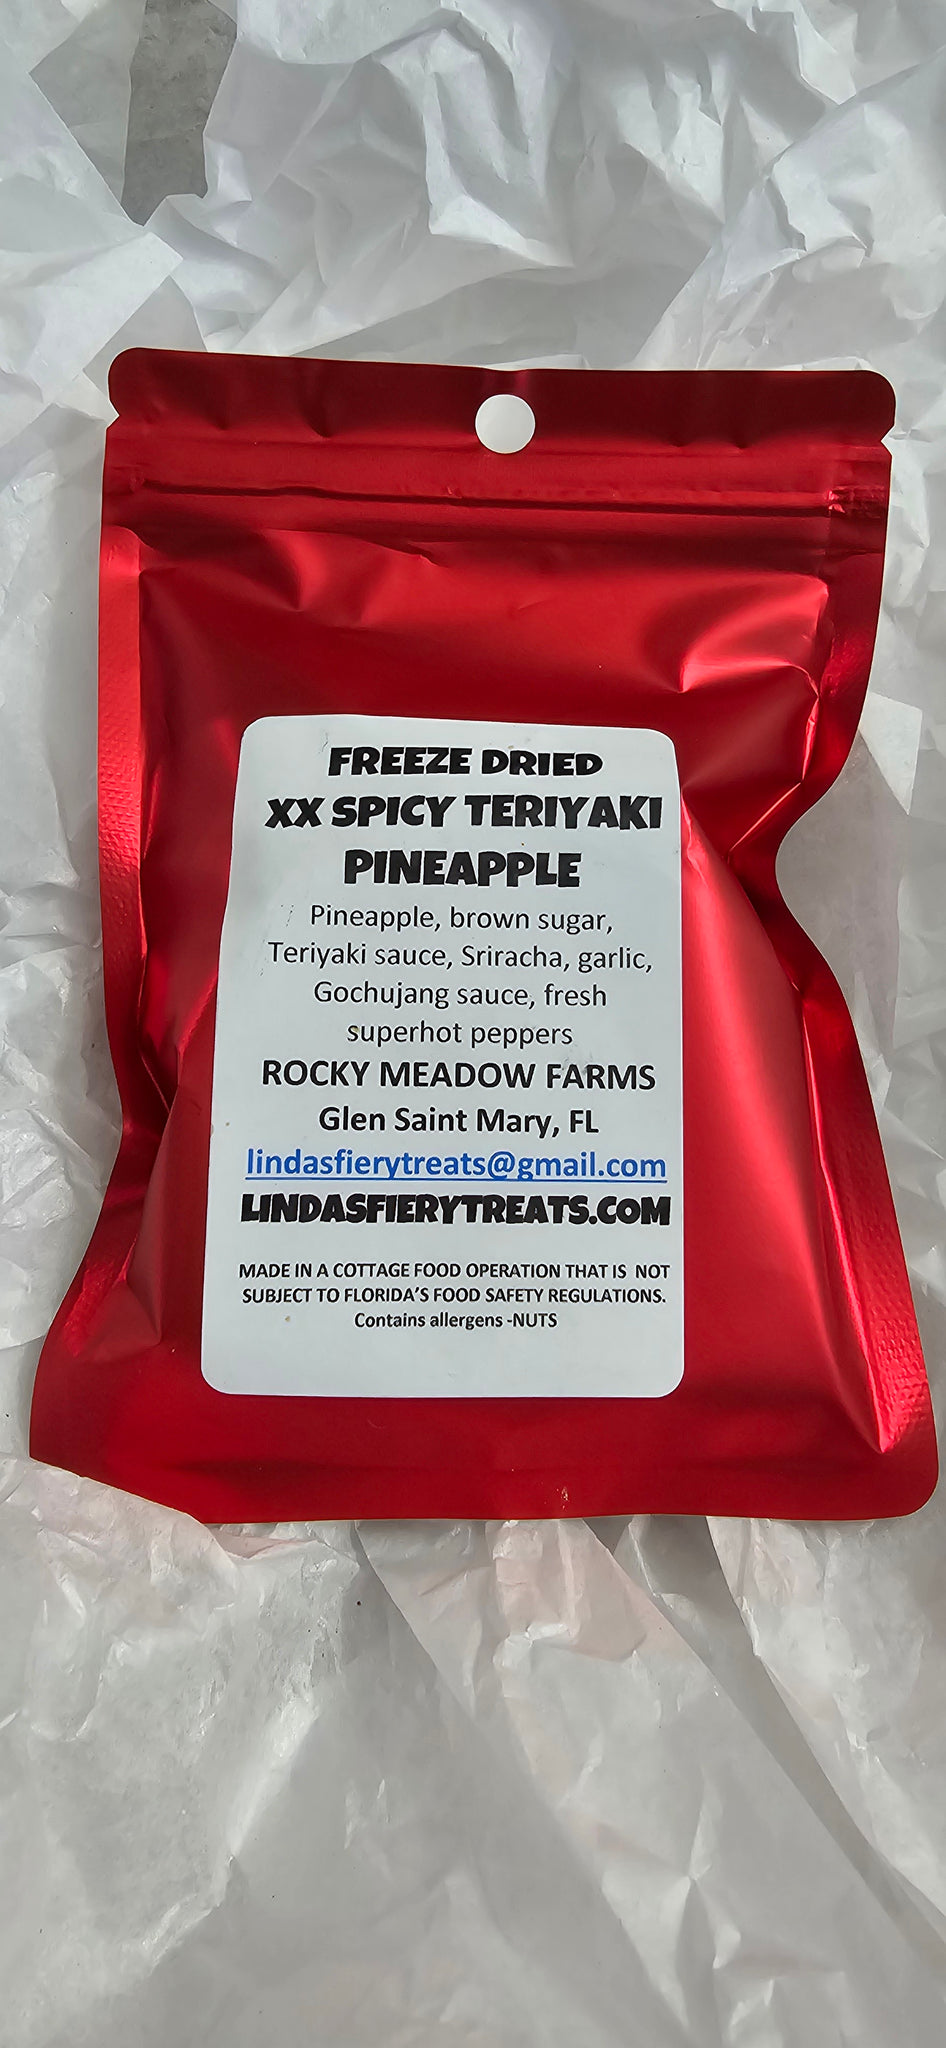 Freeze dried - XXSpicy Teriyaki Pineapple